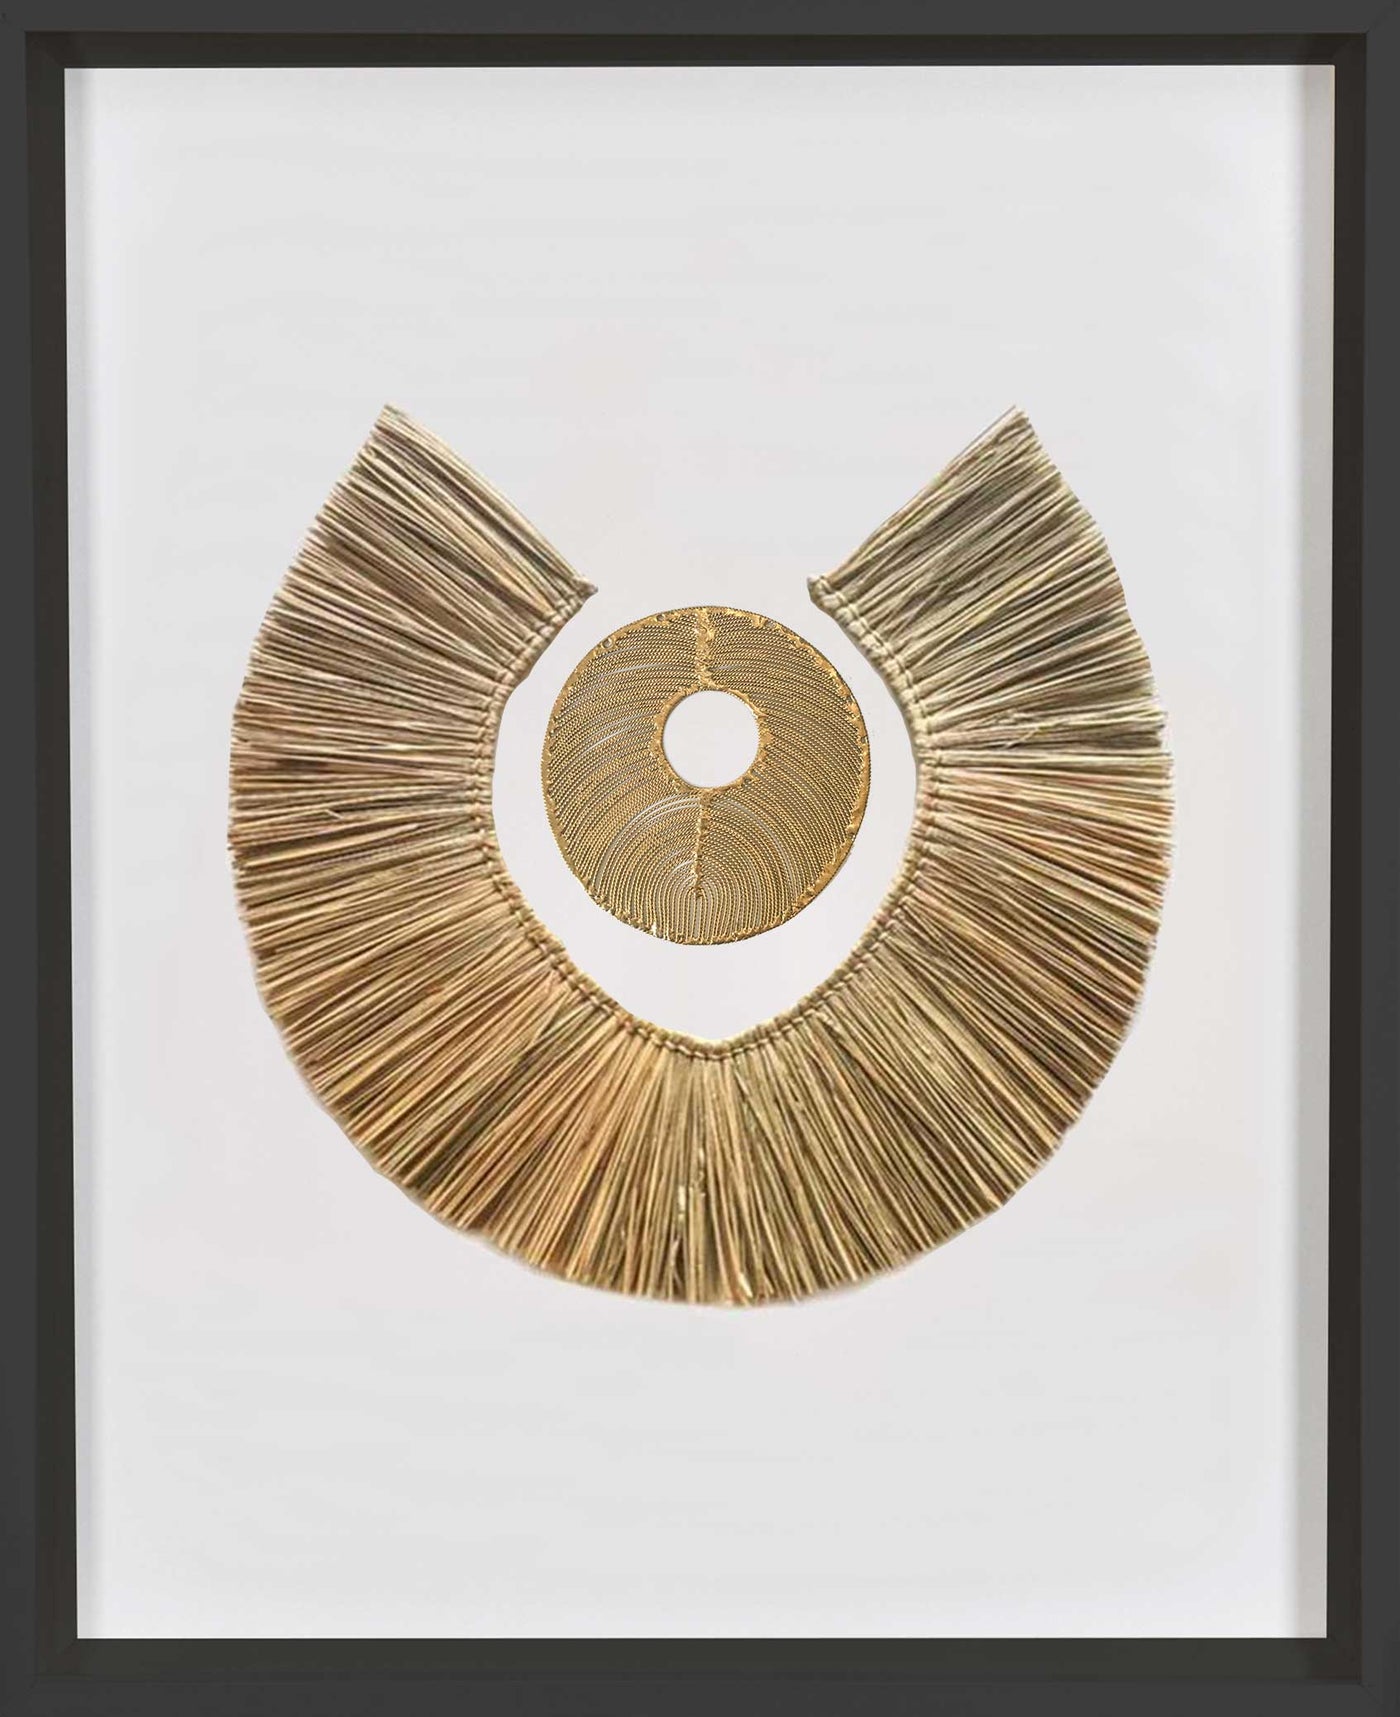 African Disc Gold & Grass Ring Artwork 67 x 85 cm